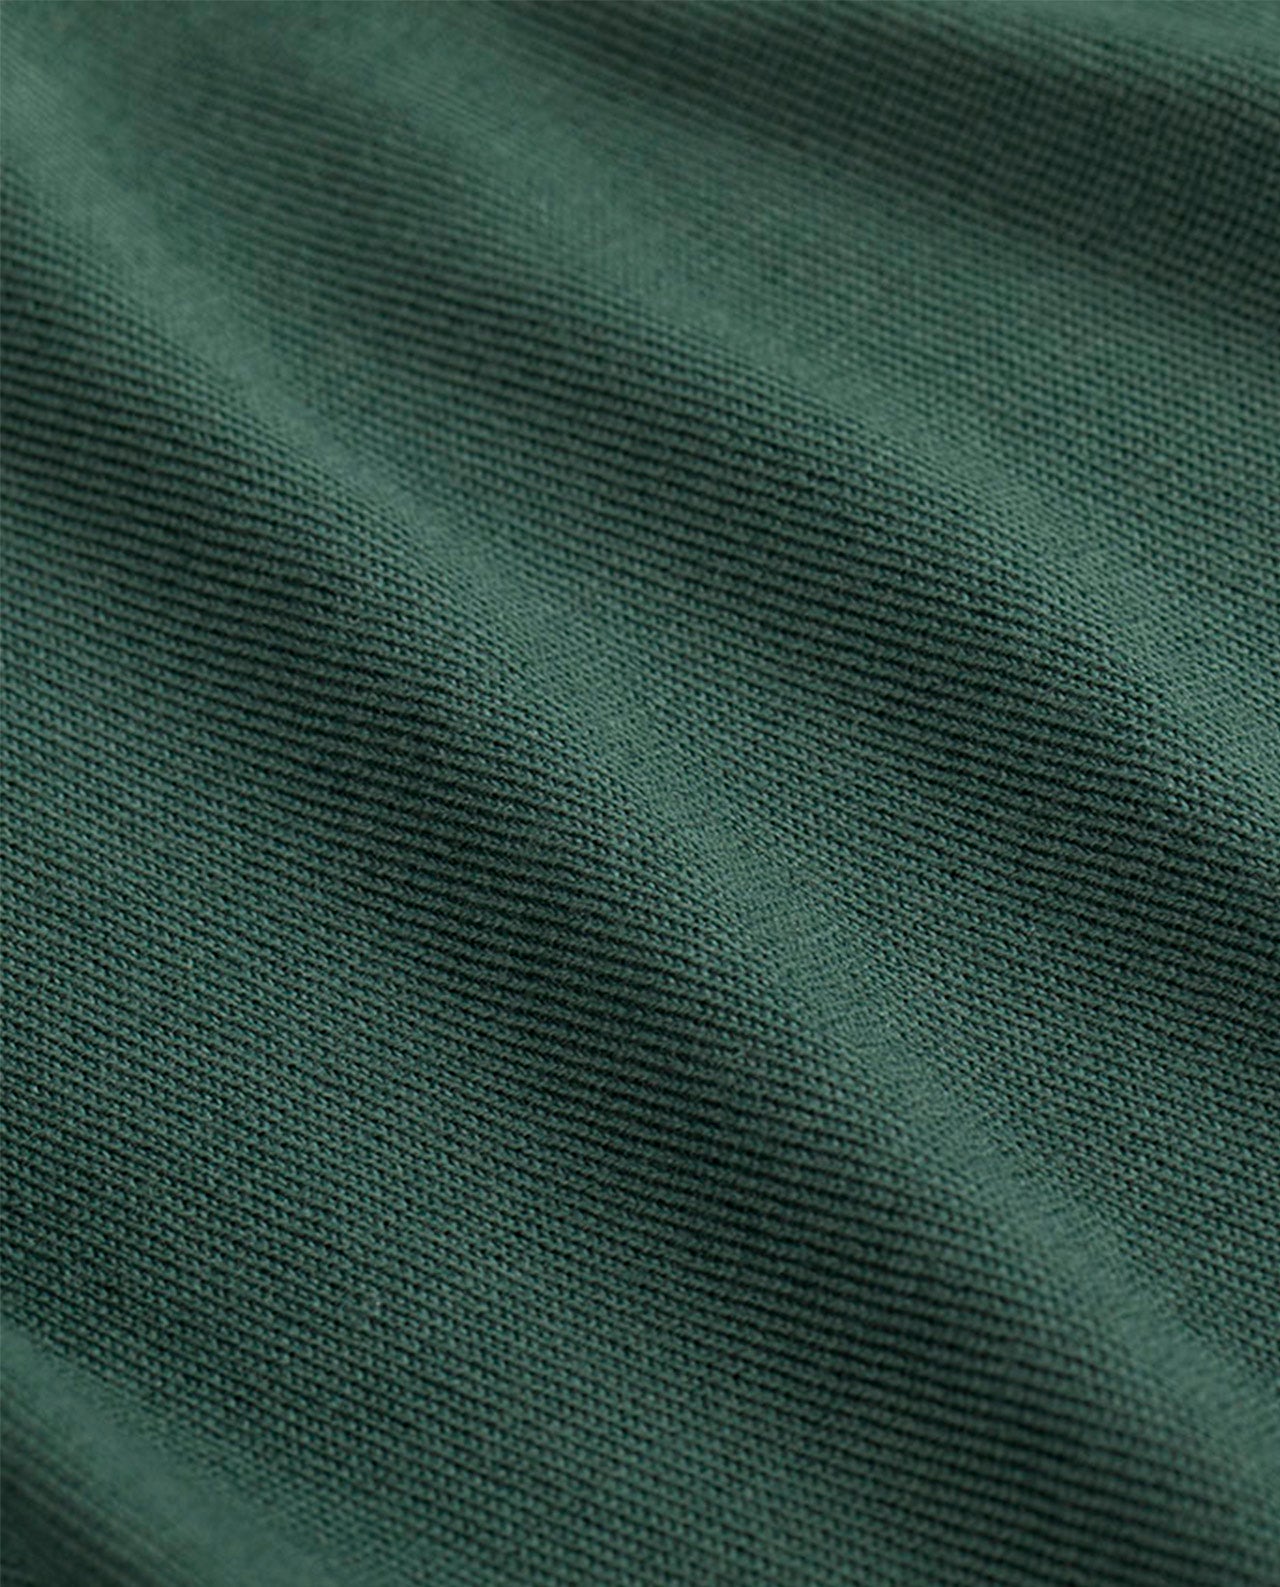 marché commun noyoco polo homme manches longues laine mérinos extra fine vert éco-responsable